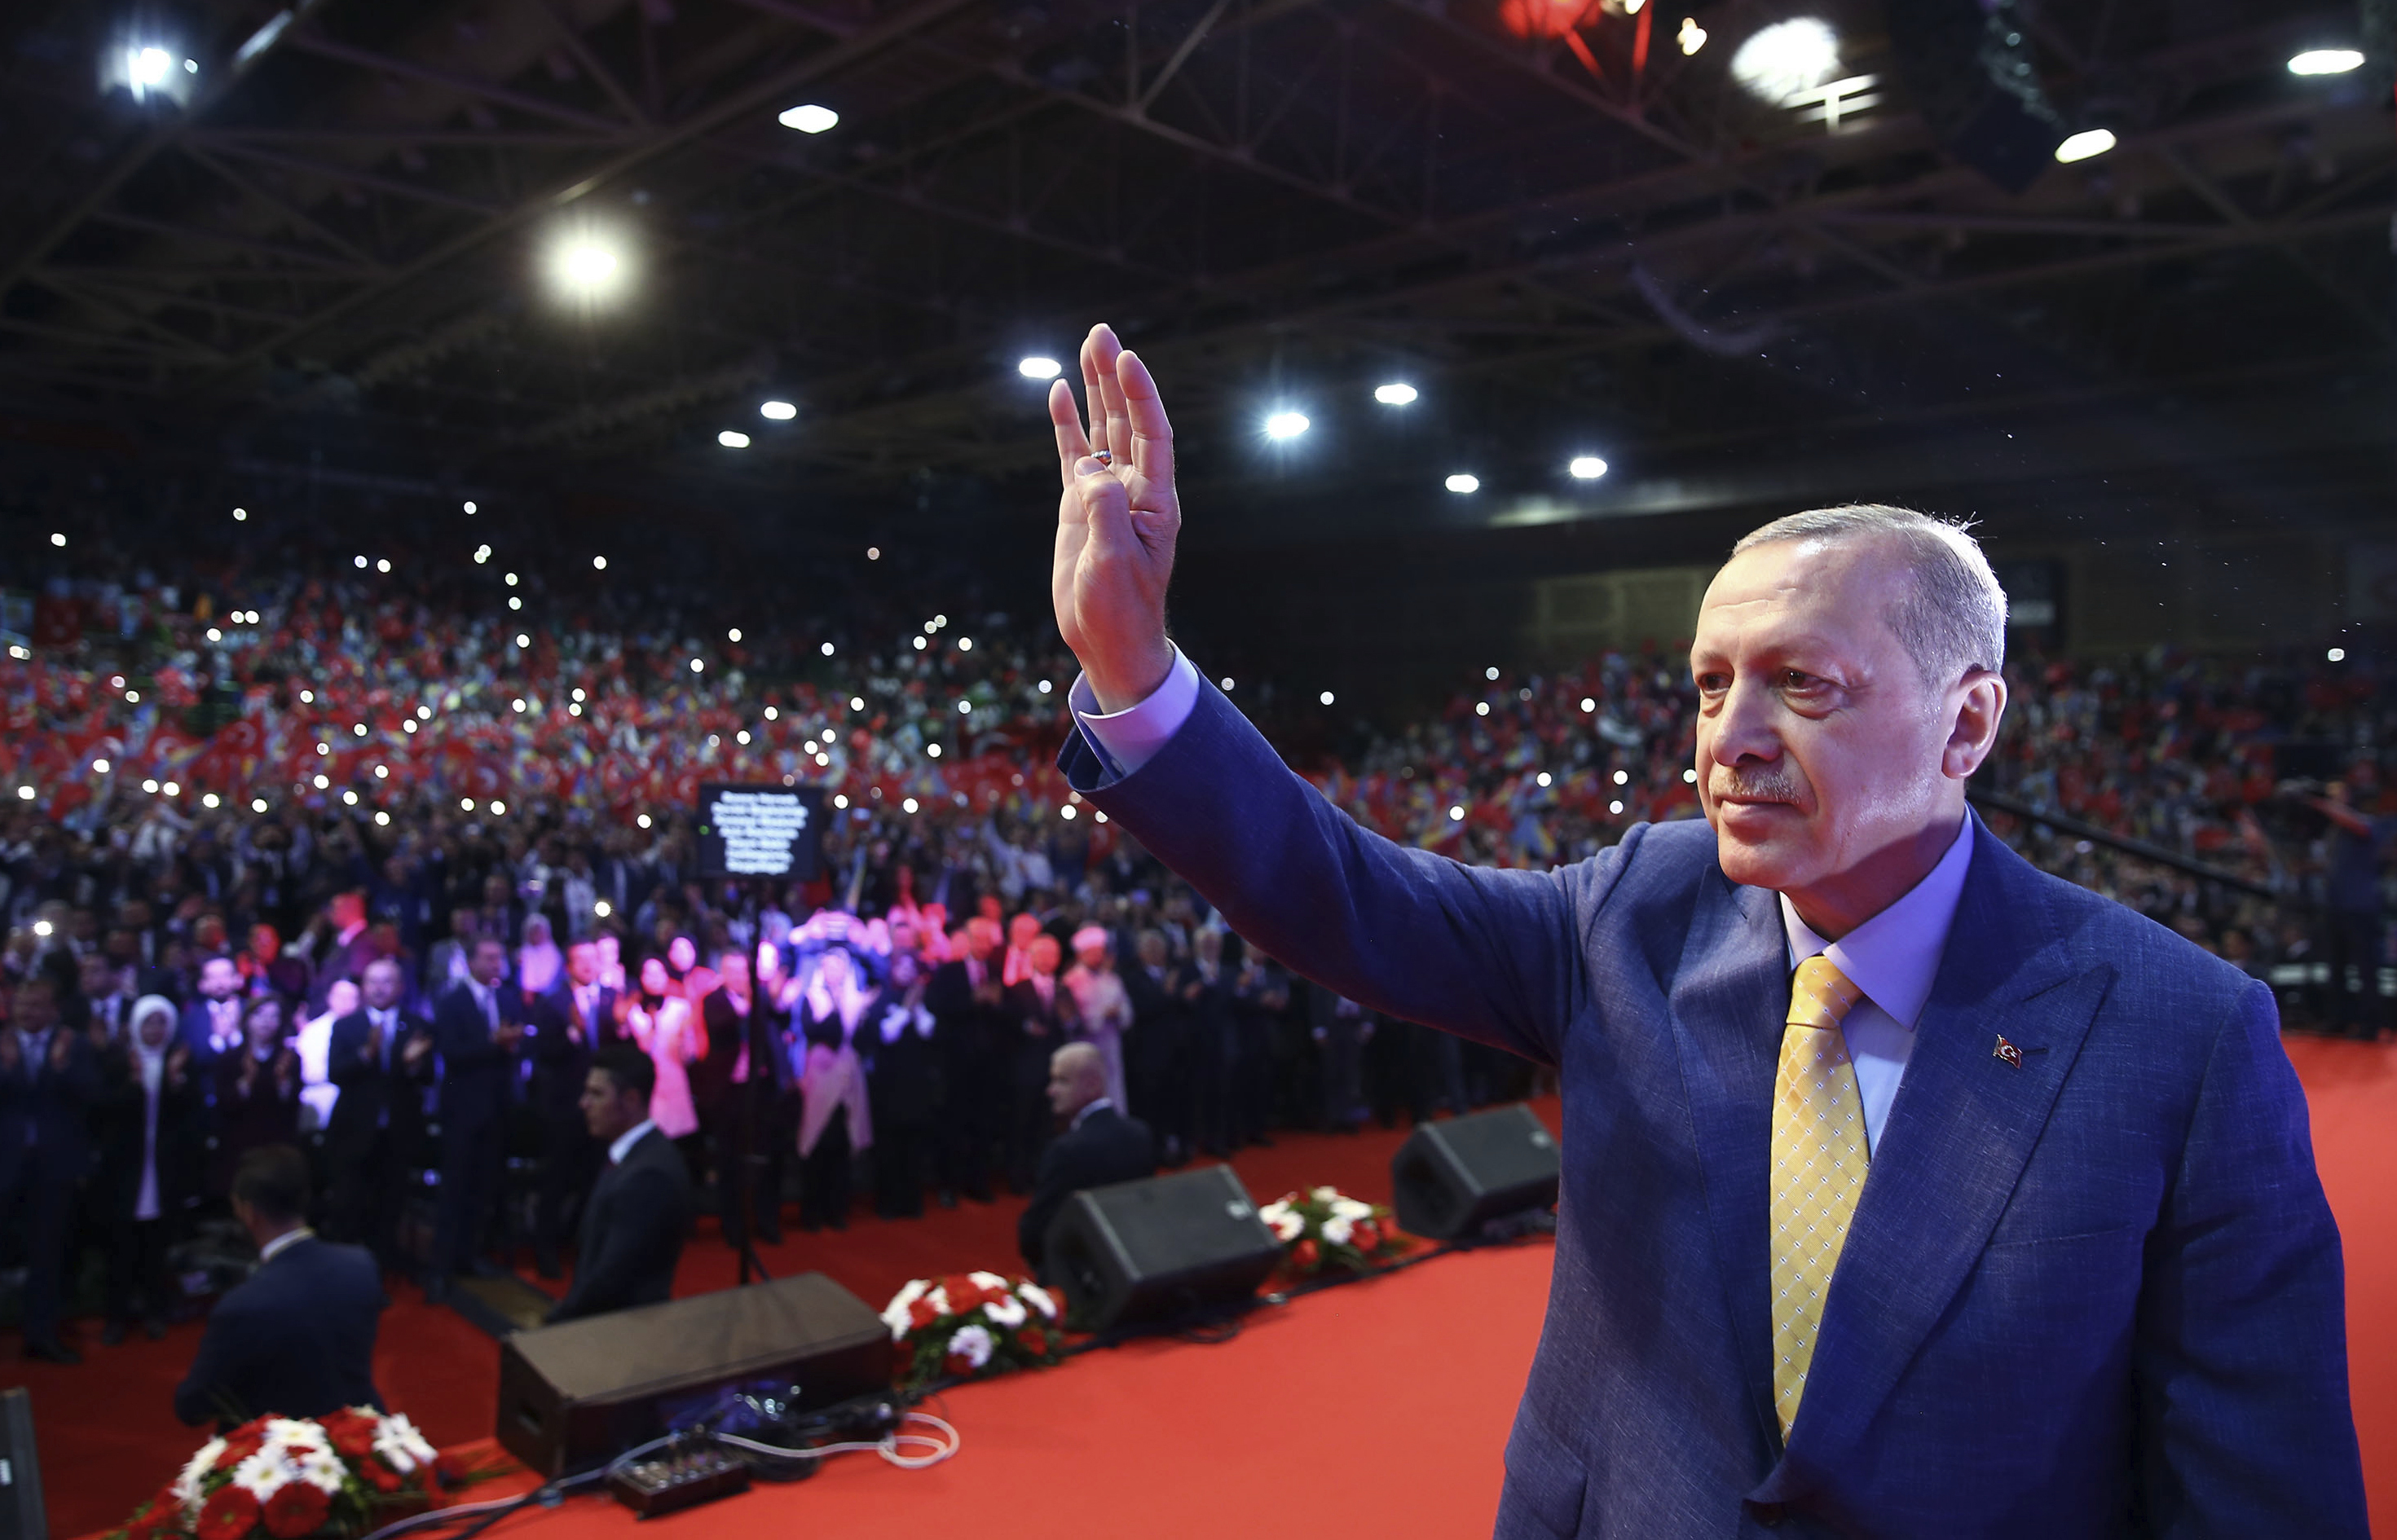 الرئيس التركي رجب طيب اردوغان يحيي انصاره من الجالية التركية في سراييفو